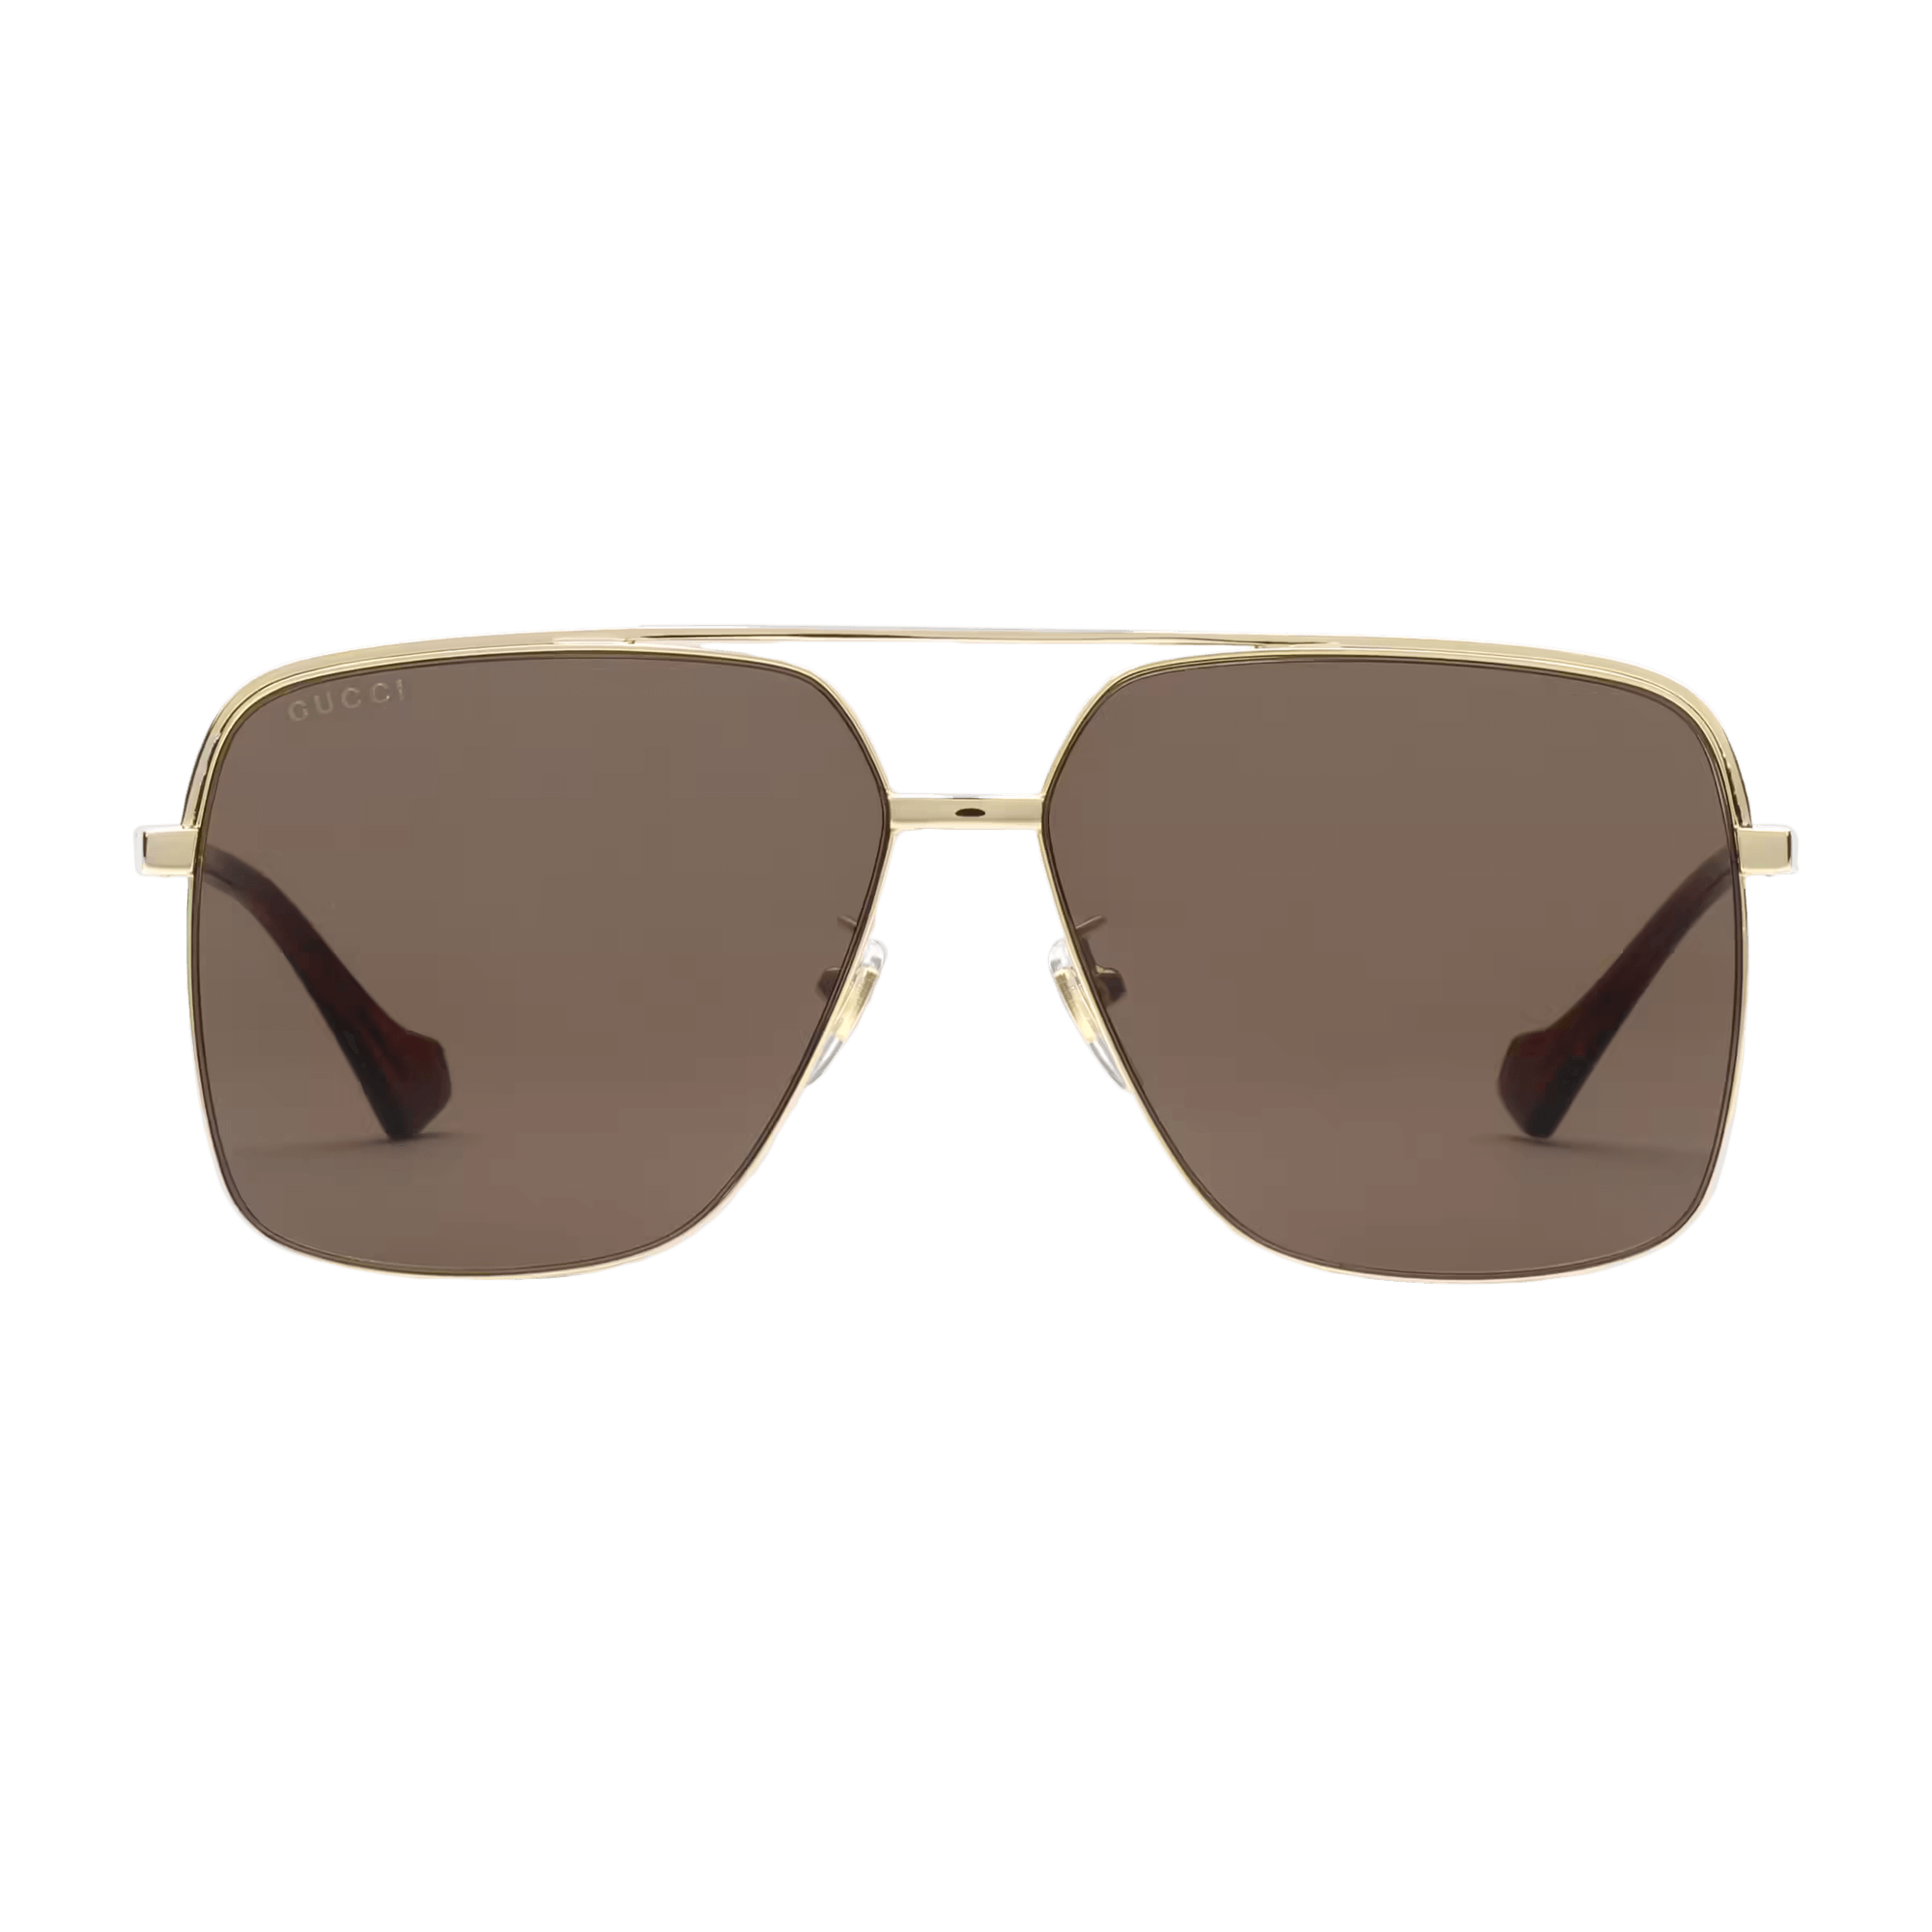 Low Nose Bridge Fit Sunglasses - Enigma Boutique